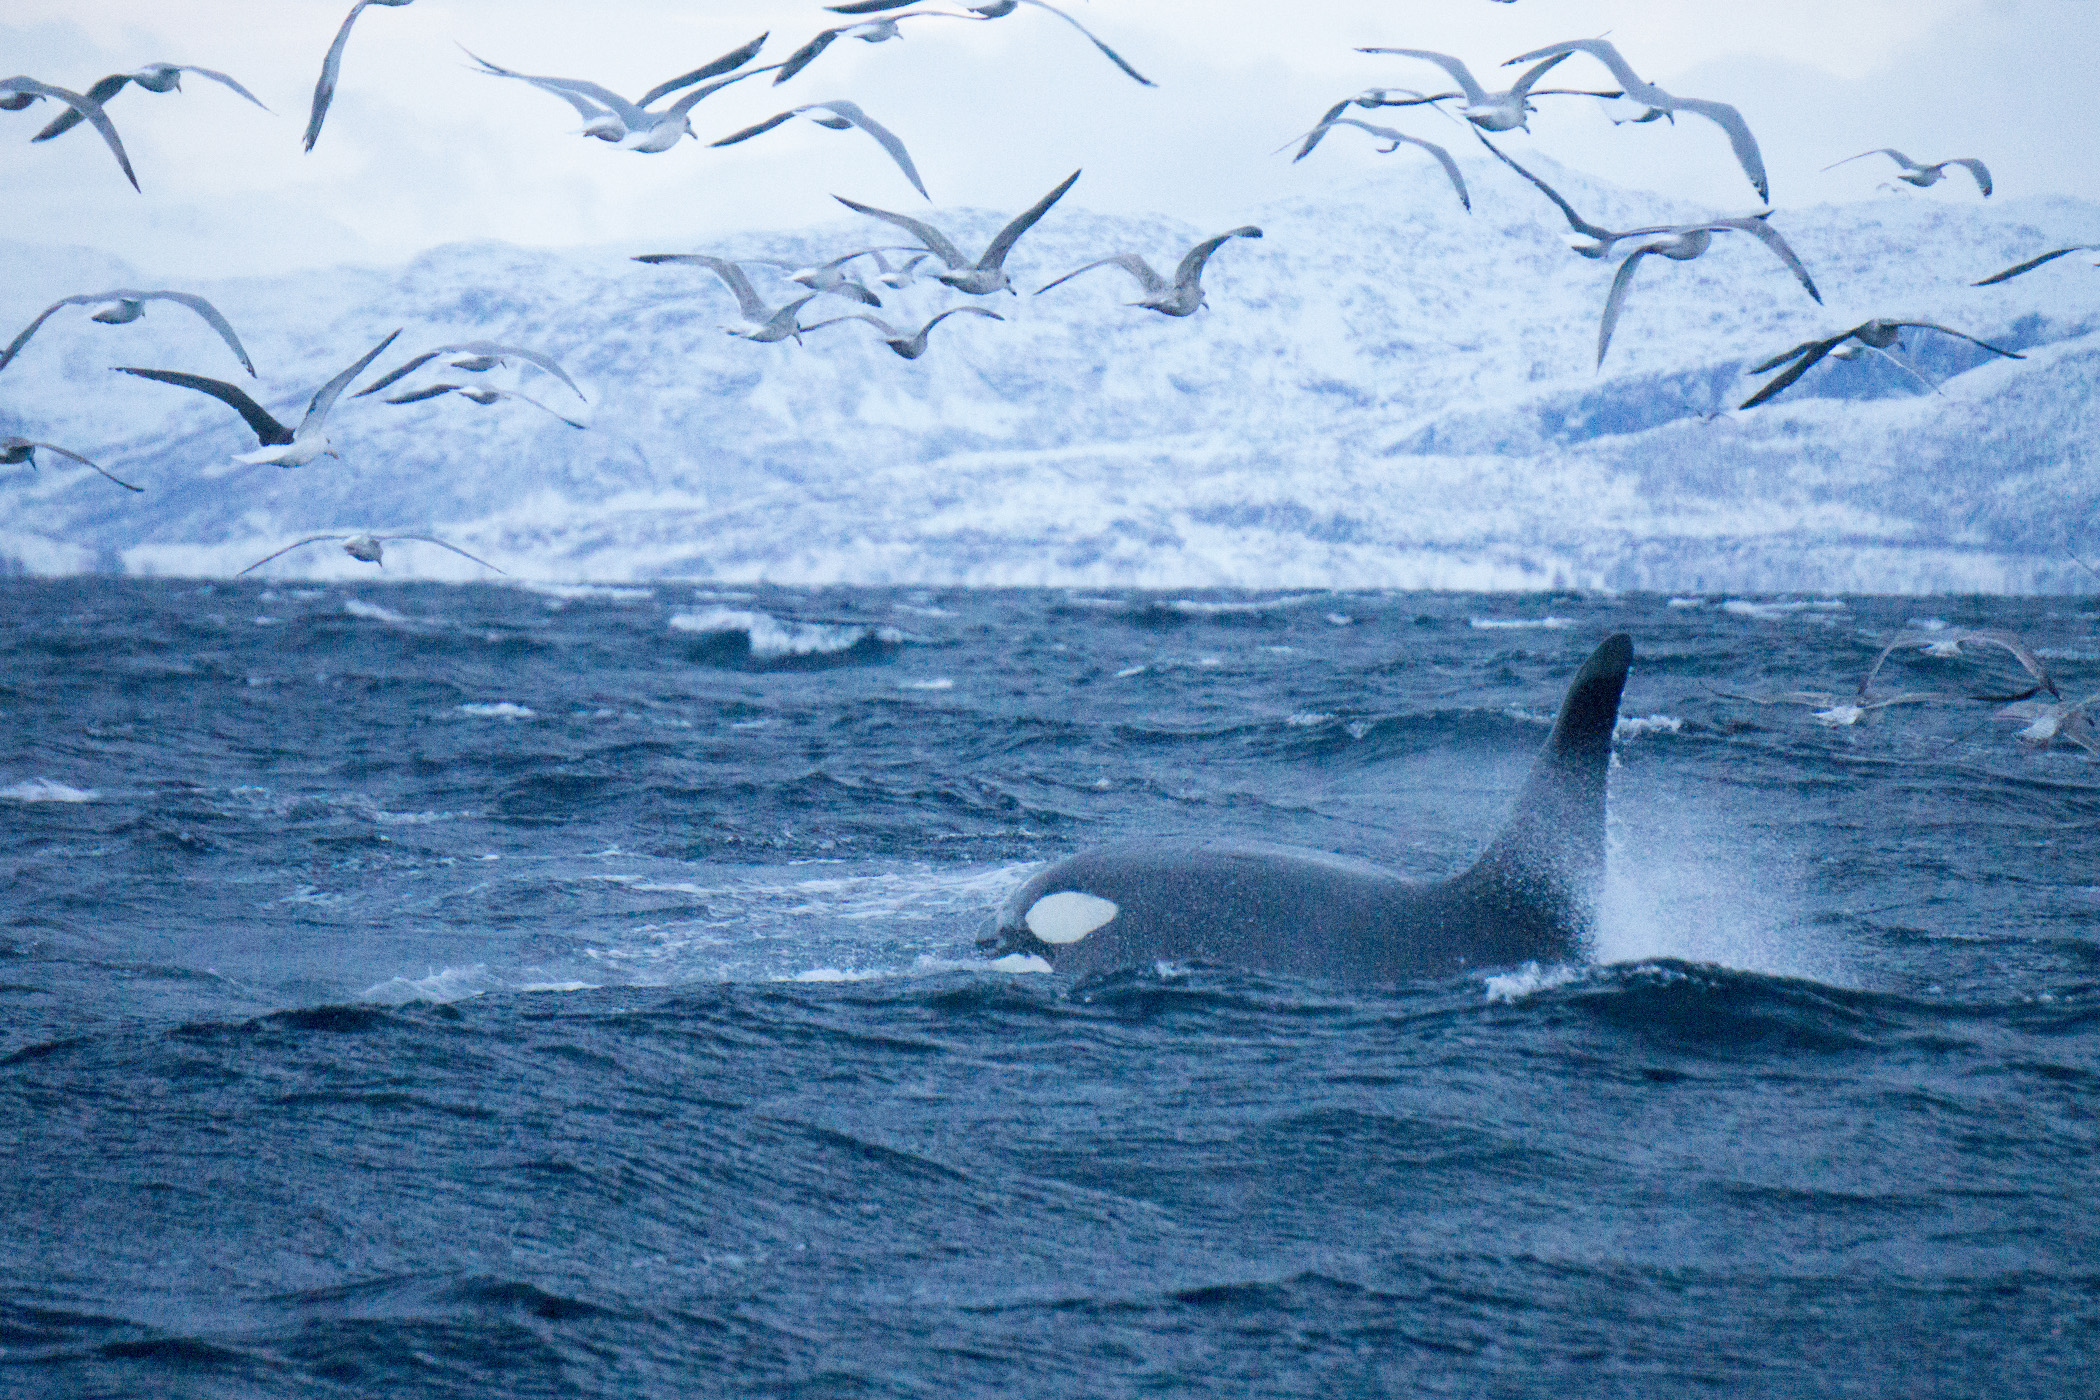 Orca killer whale and seabirds, Skjervøy